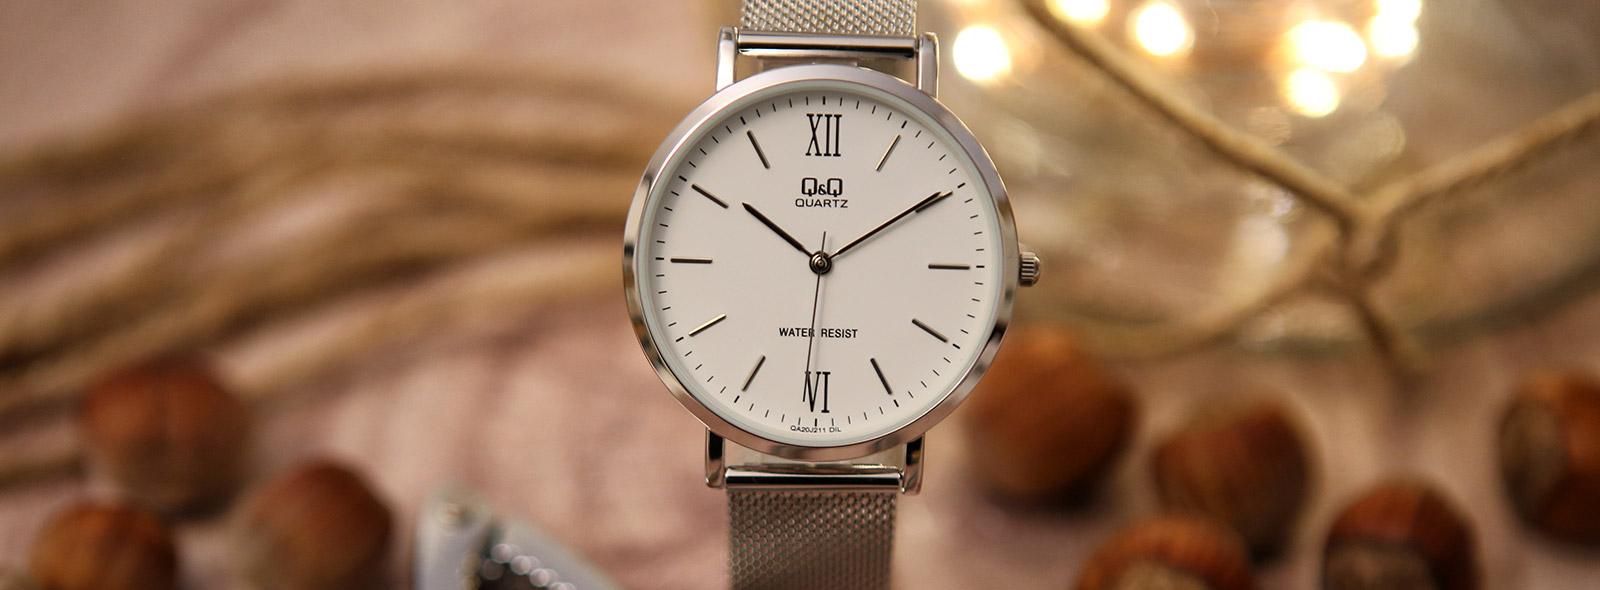 Zegarek Q&Q Classic QA20-001 - elegancki czasomierz na co dzień [RECENZJA]  | Zegarownia.pl Blog